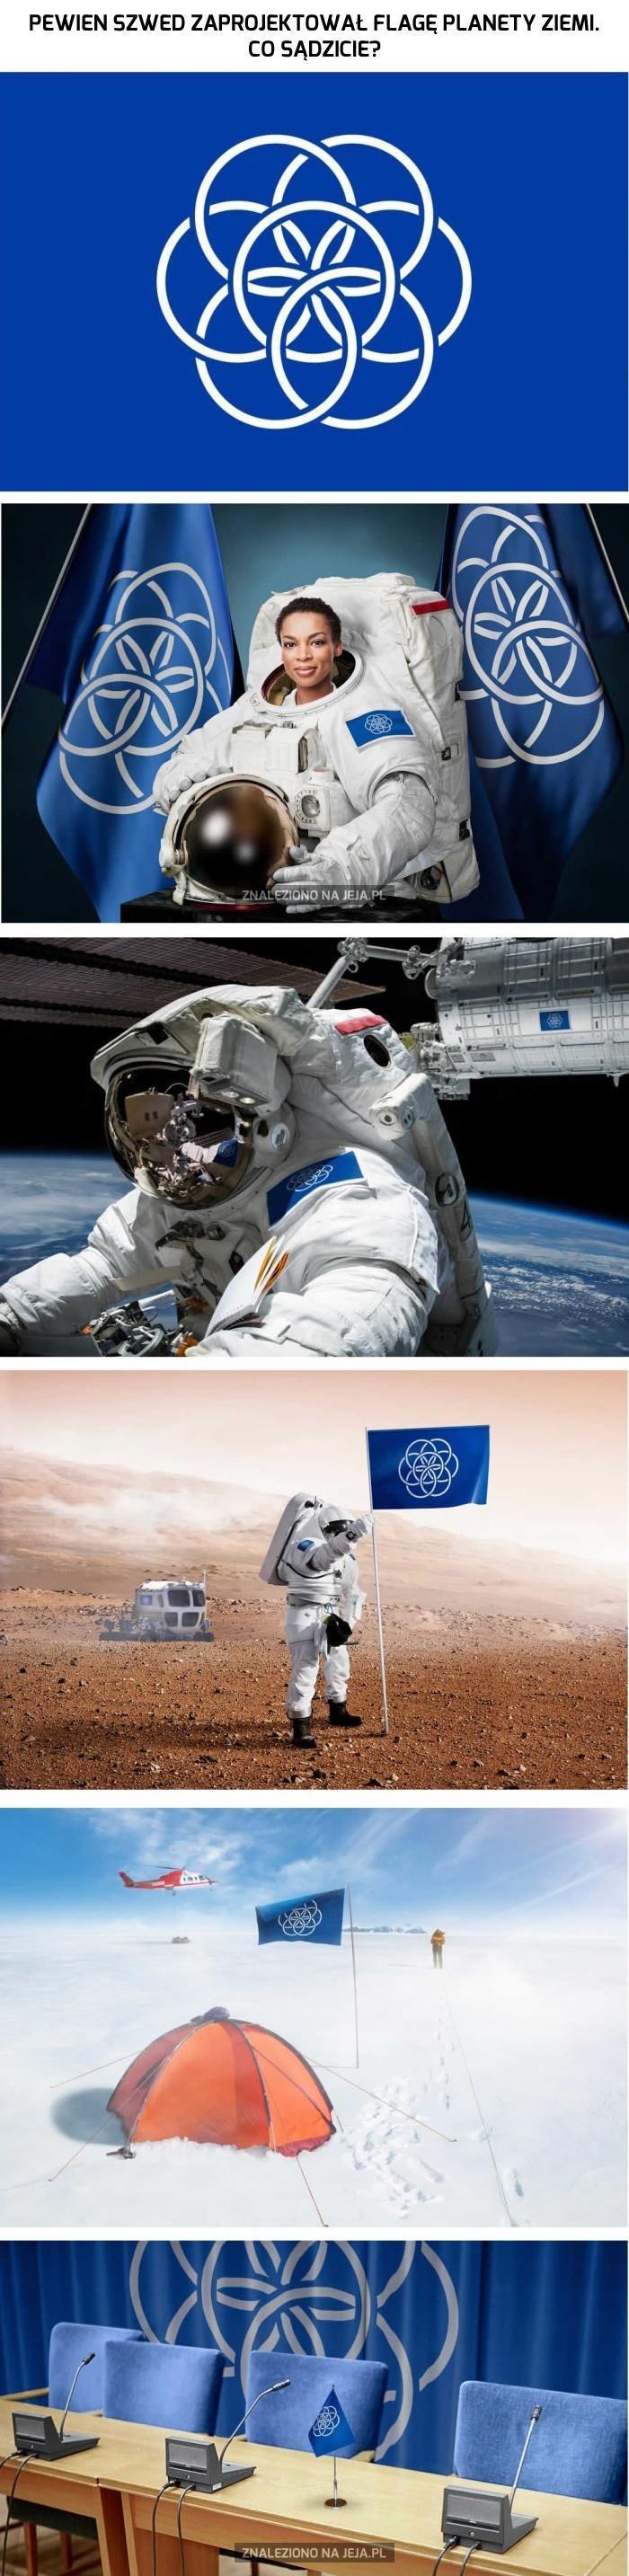 Nasza planeta ma swoją flagę!